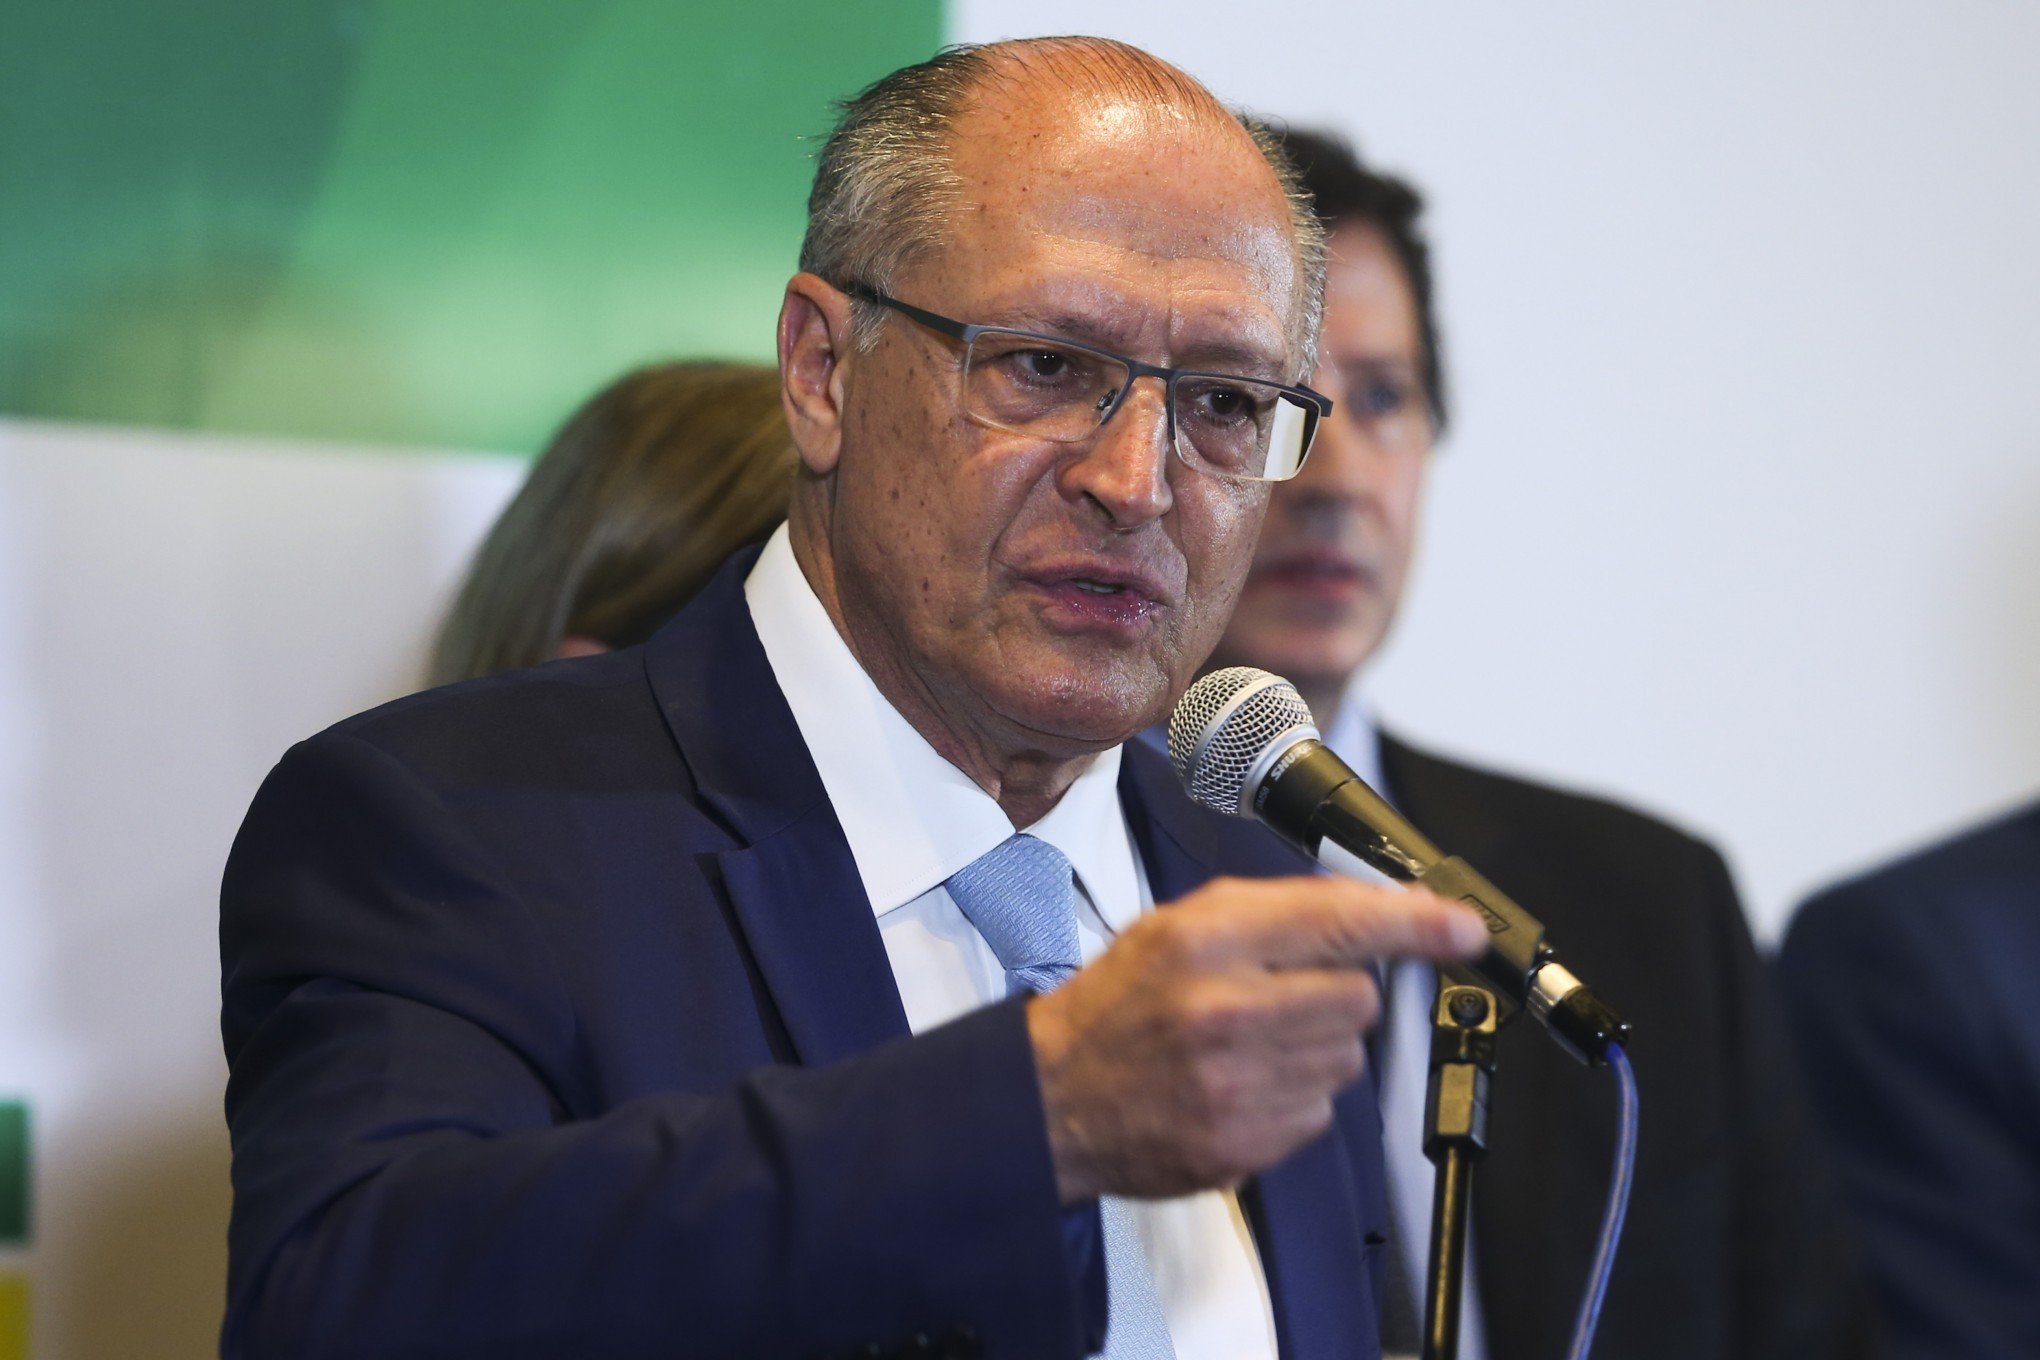 EL NIÑO: Alckmin e ministros vão a Manaus discutir medidas contra grave estiagem